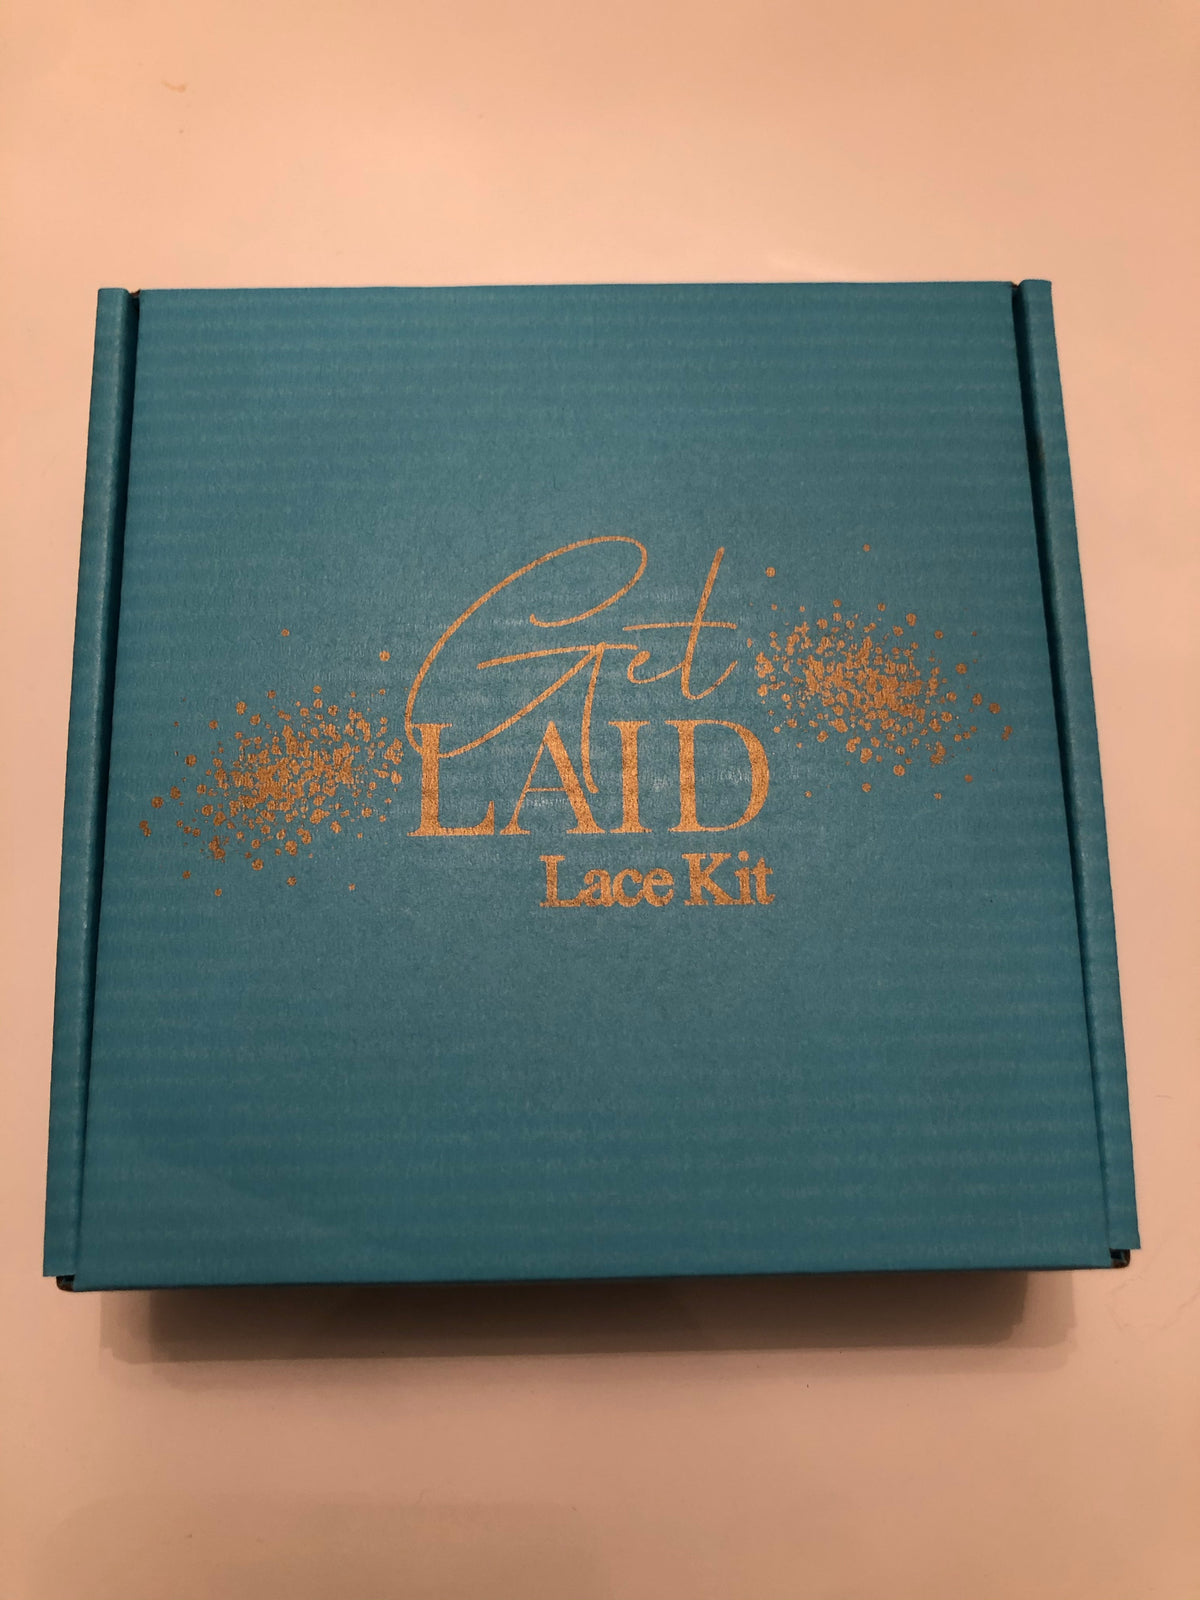 Get Laid lace kit